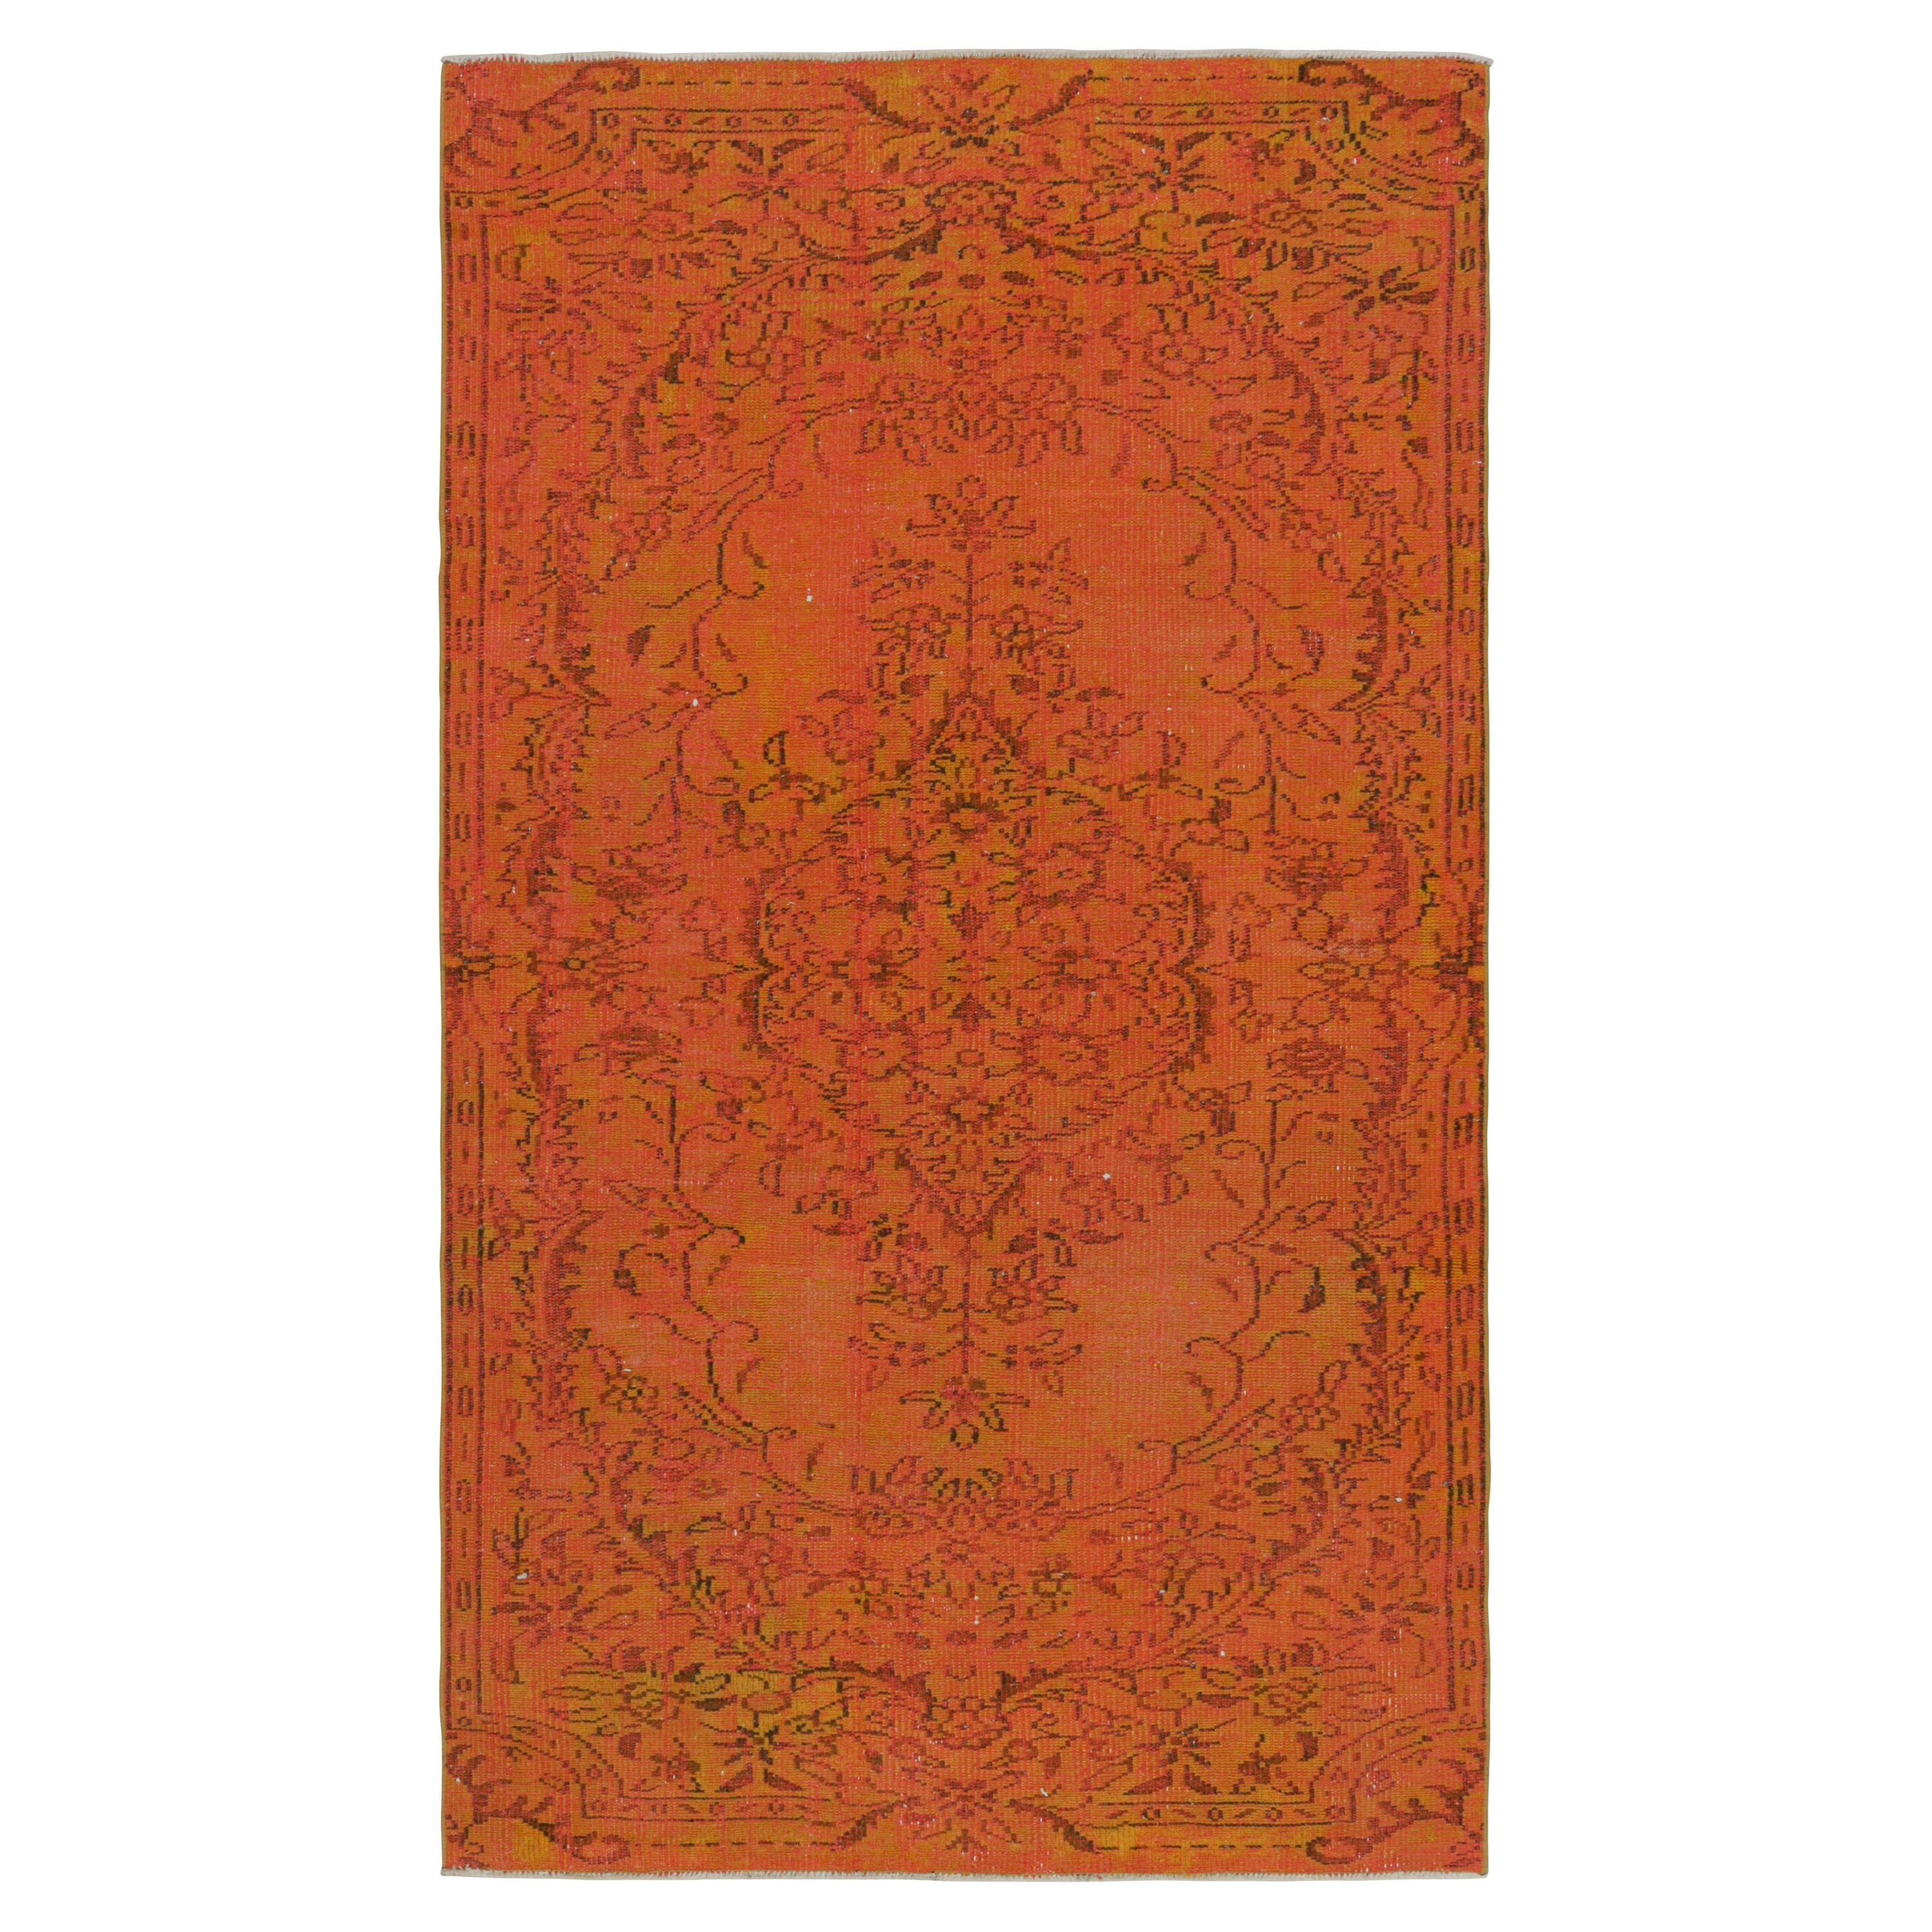 Türkischer Vintage-Teppich mit floralen, geometrischen Mustern von Rug & Kilim